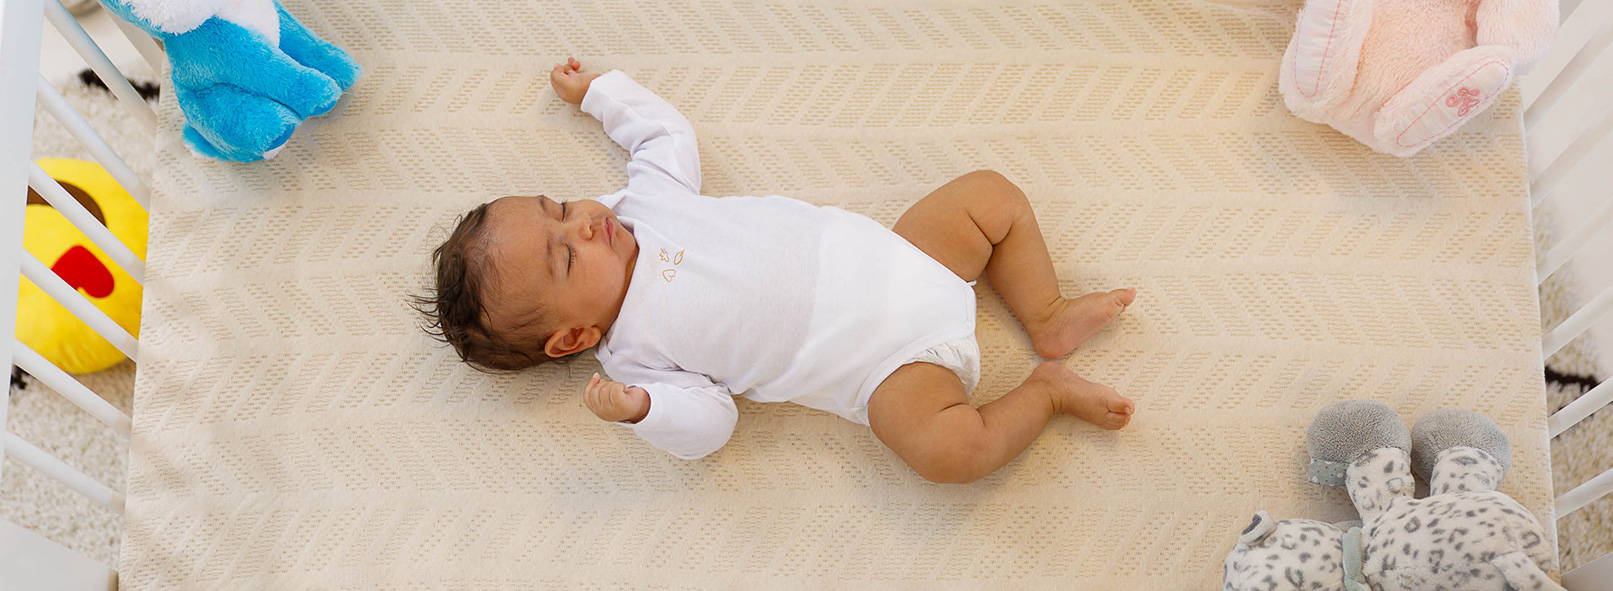 imperméable MotherPlus Matelas de lit pour bébé et enfant en bas âge respectueux de l'environnement 120 x 60 x 13 cm respirant 